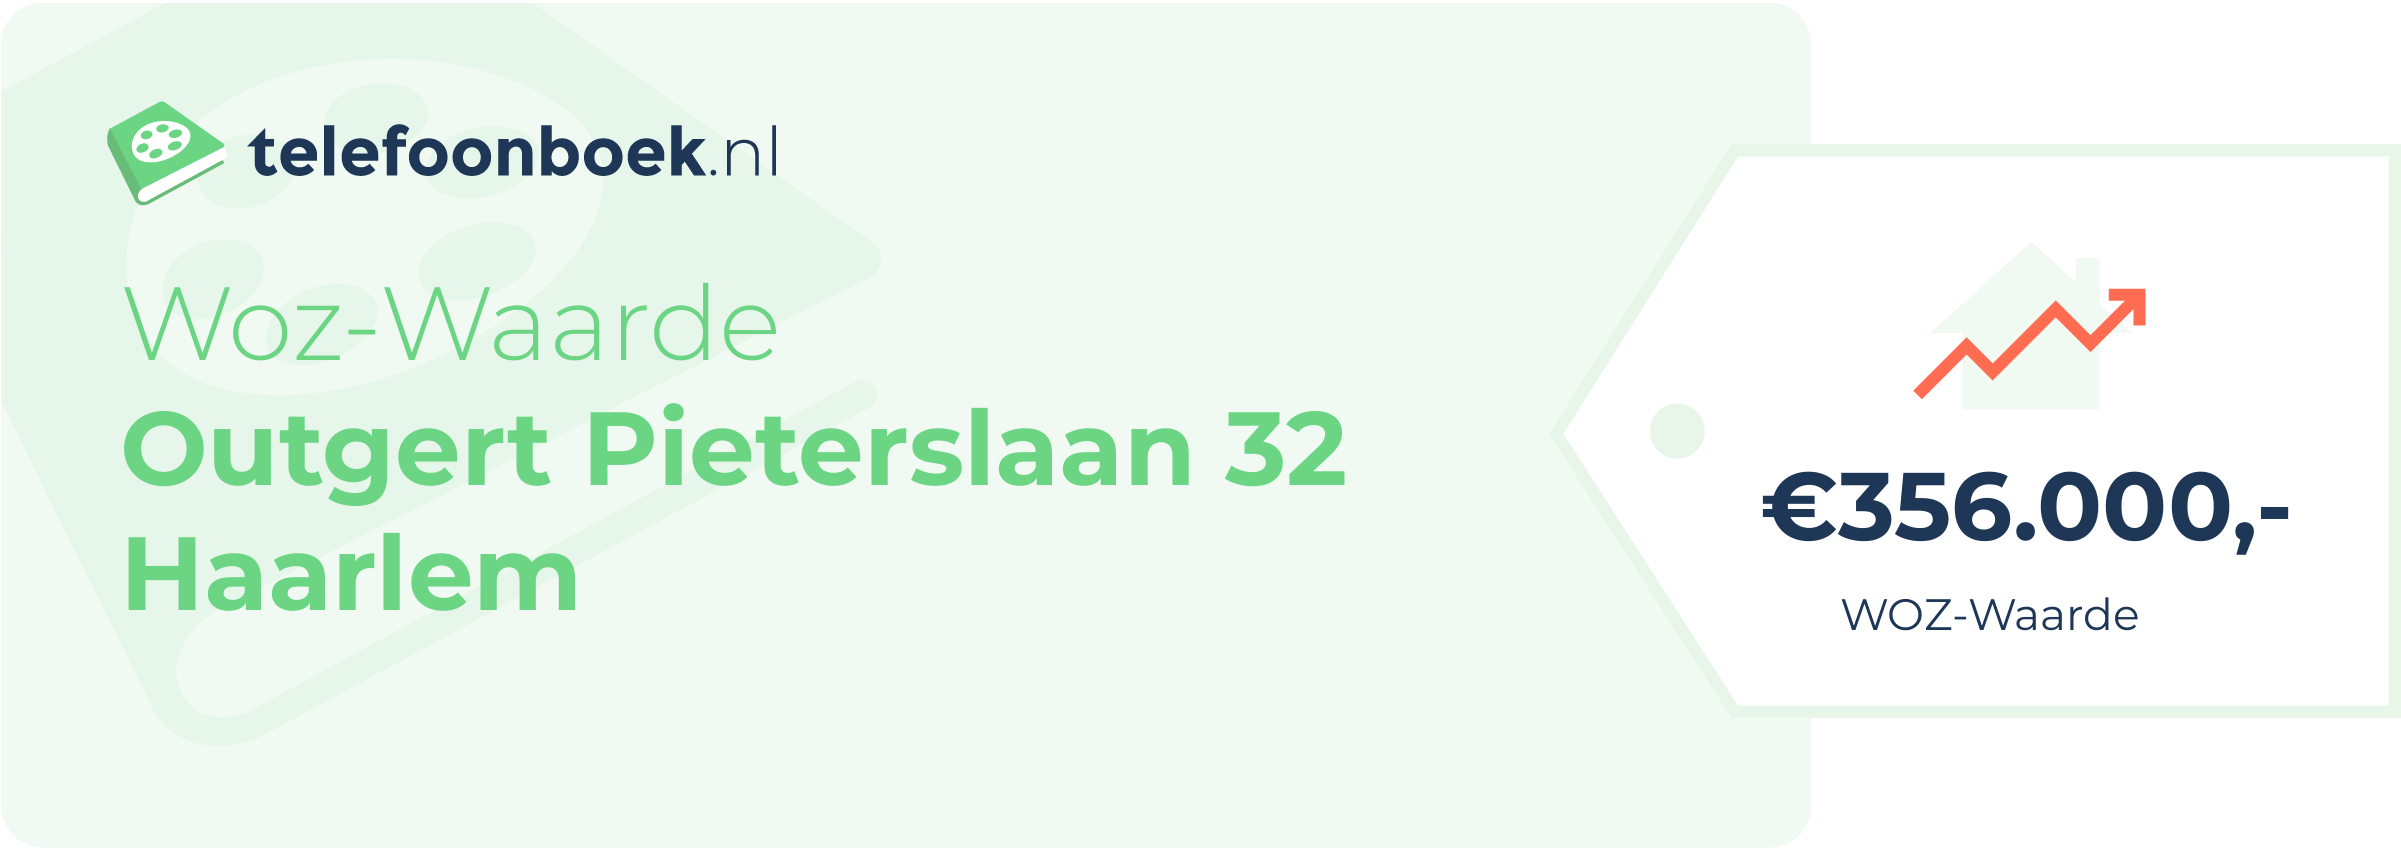 WOZ-waarde Outgert Pieterslaan 32 Haarlem